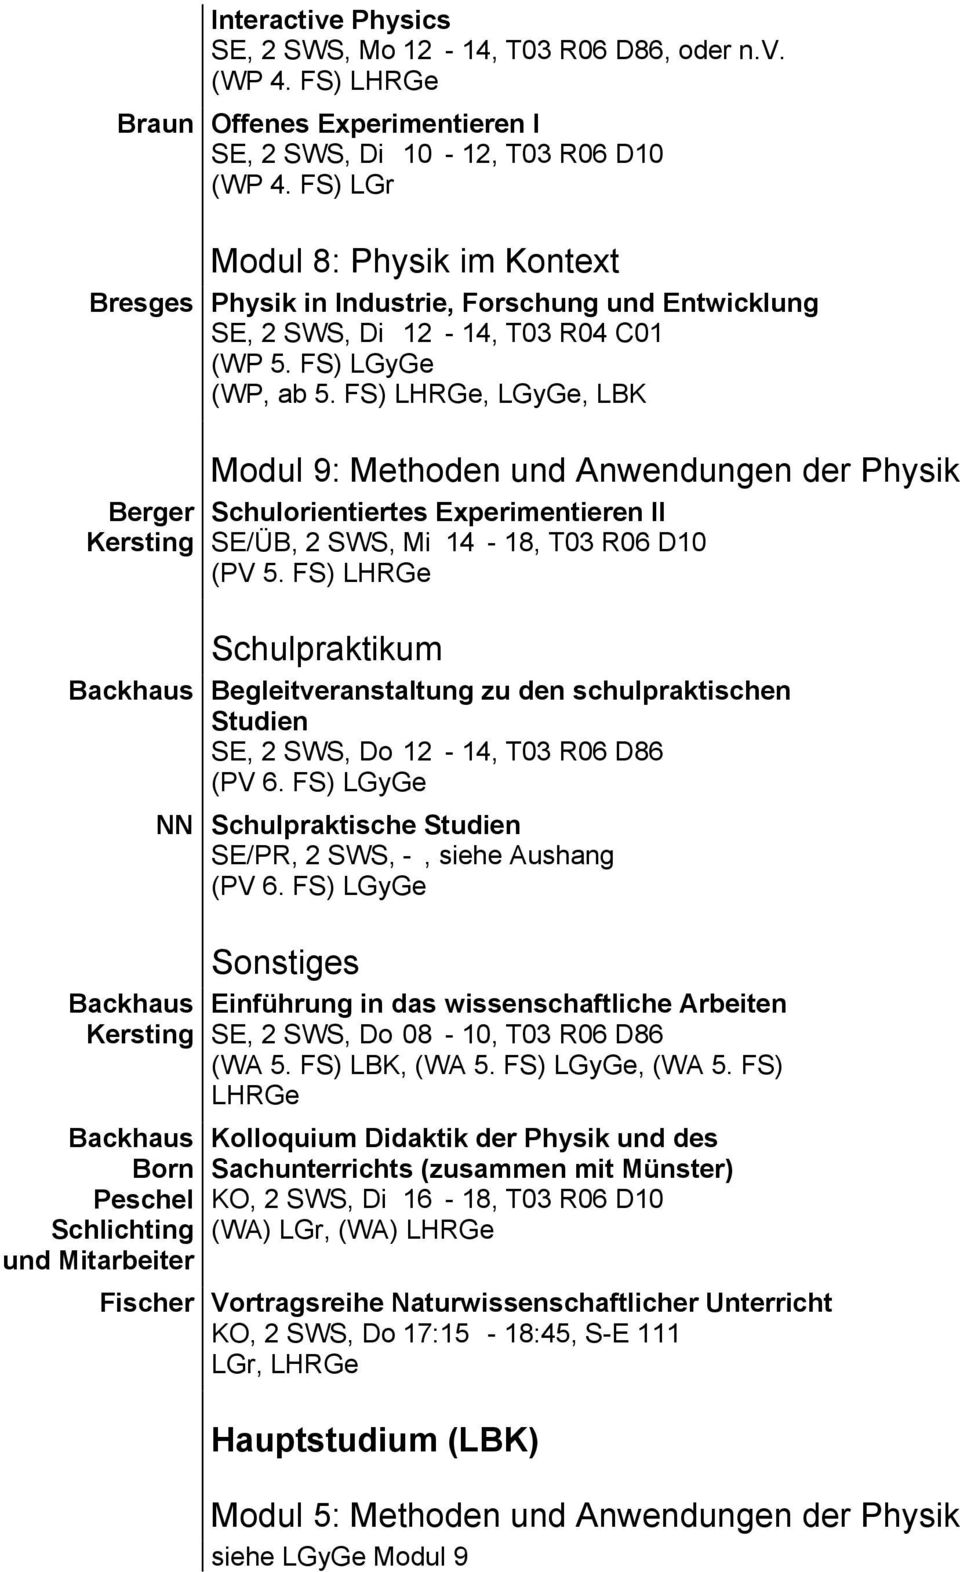 FS) LHRGe, LGyGe, LBK Berger Kersting Modul 9: Methoden und Anwendungen der Schulorientiertes Experimentieren II SE/ÜB, 2 SWS, Mi 14-18, T03 R06 D10 (PV 5.